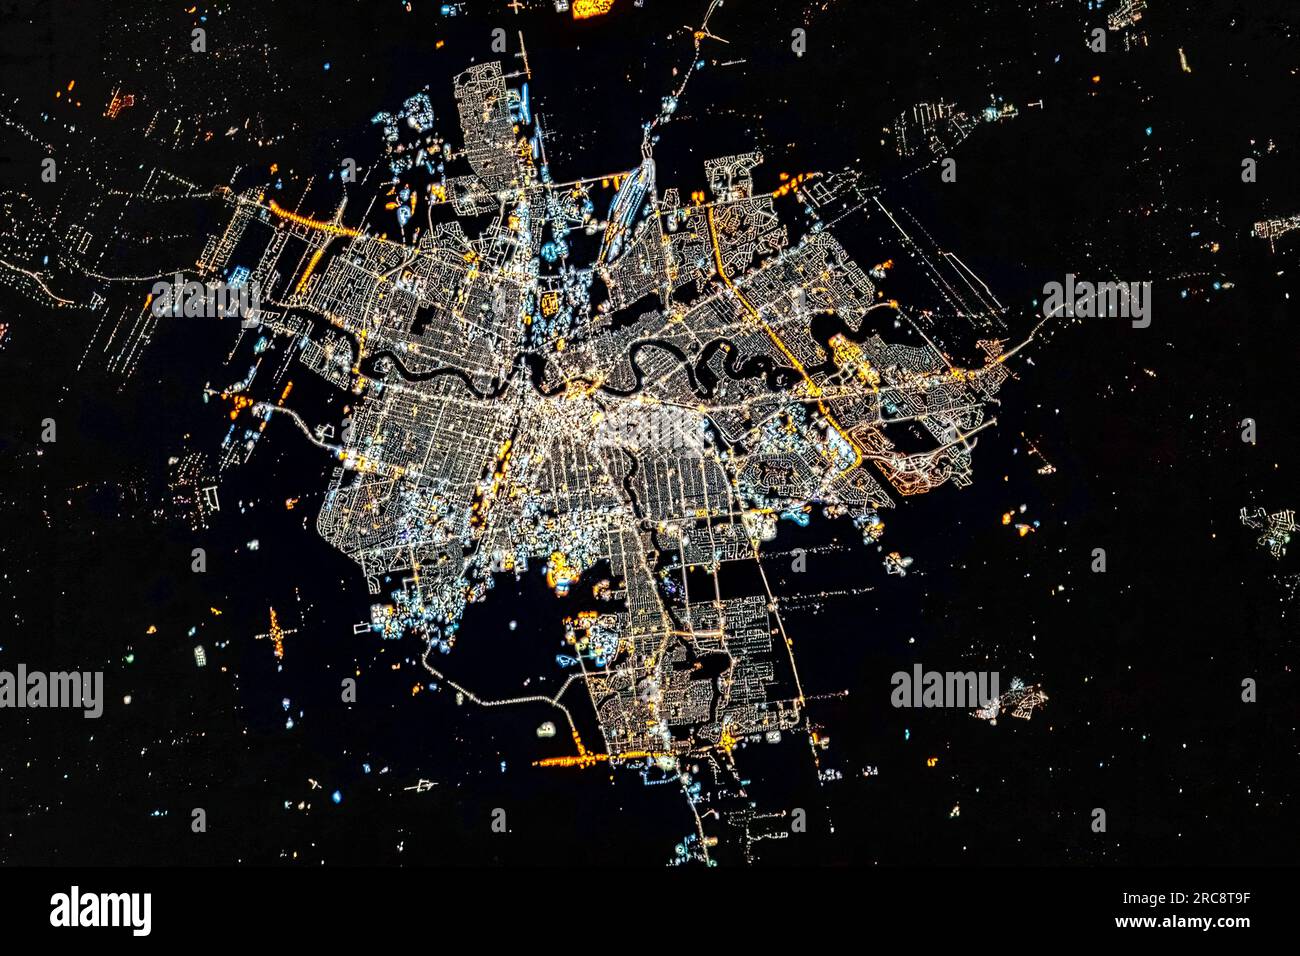 Vue aérienne des lumières de la ville de Winnipeg la nuit, Canada. Image de la NASA. Directives d'utilisation des médias : https://www.nasa.gov/multimedia/guidelines/index.html Banque D'Images